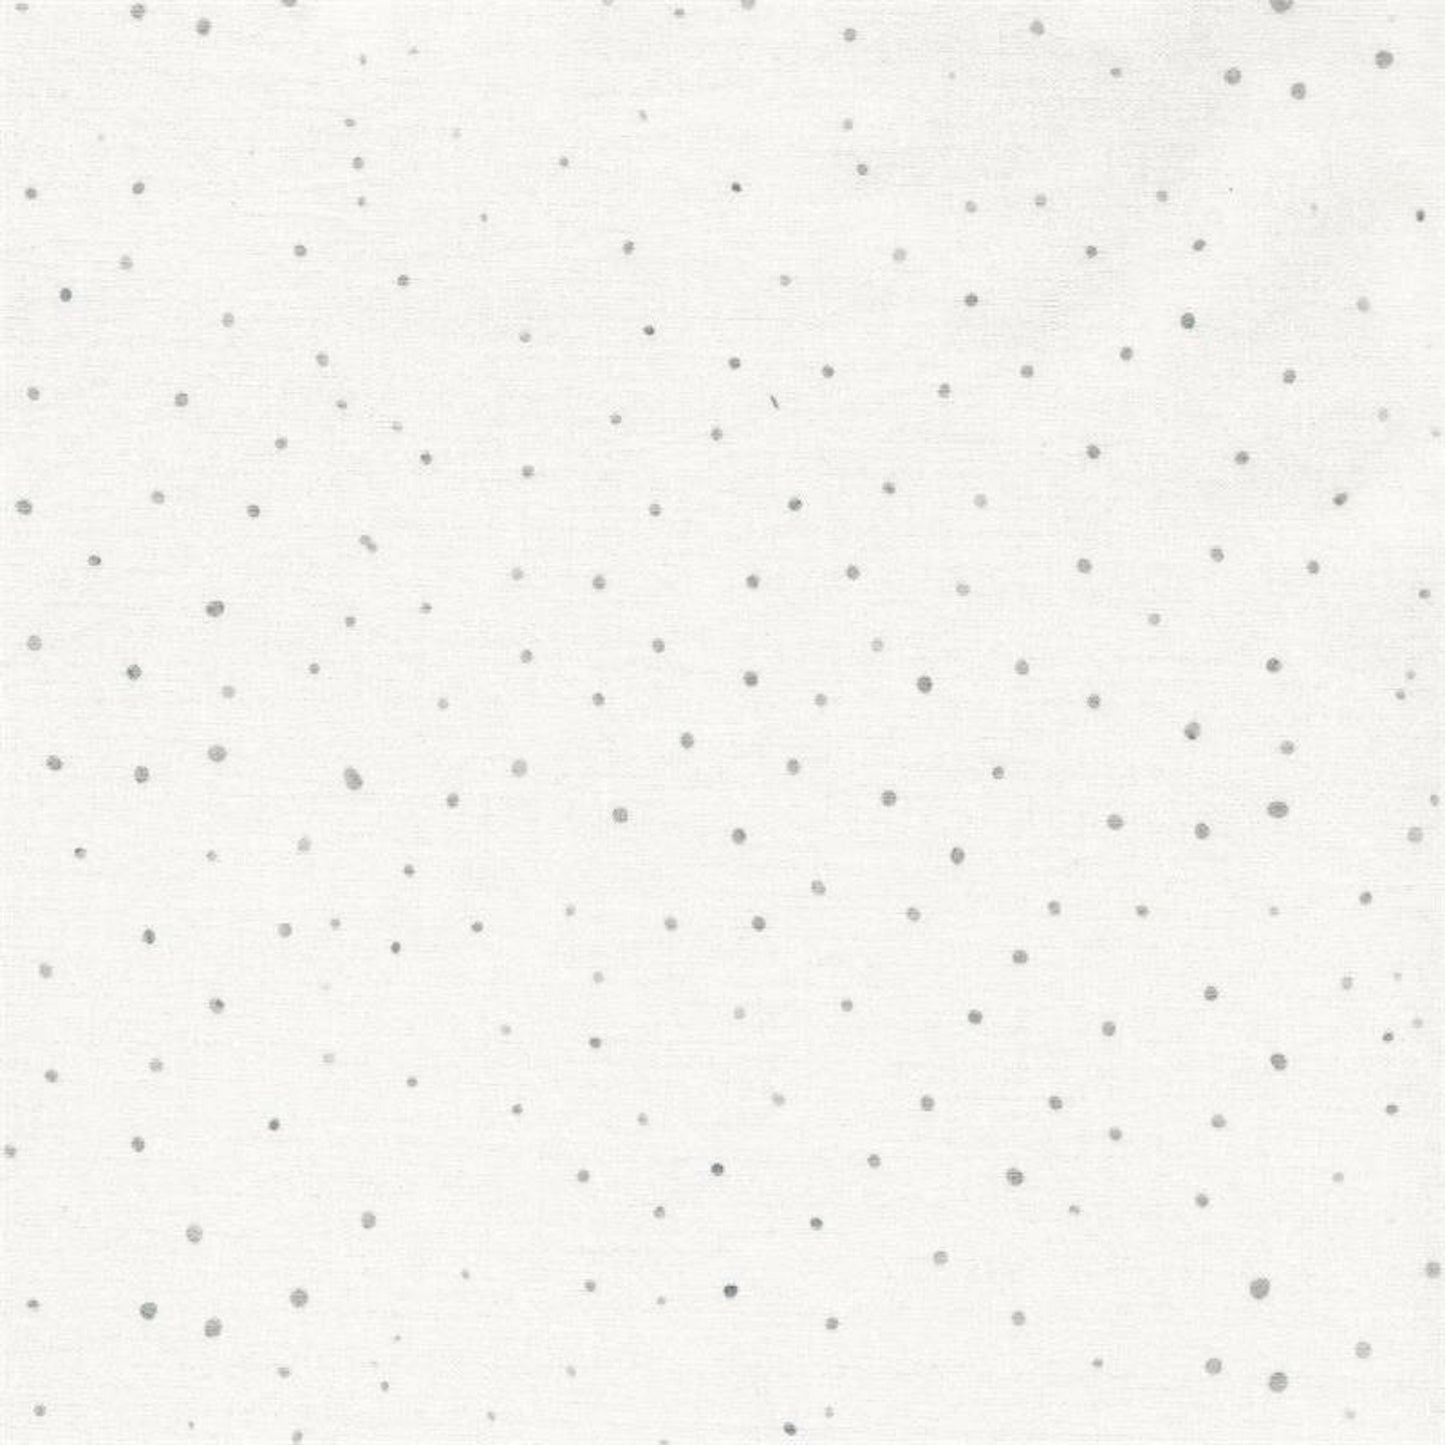 Batik Textiles-#5728-Tiny Gray Dots on Cream B/G-Fat Quarter